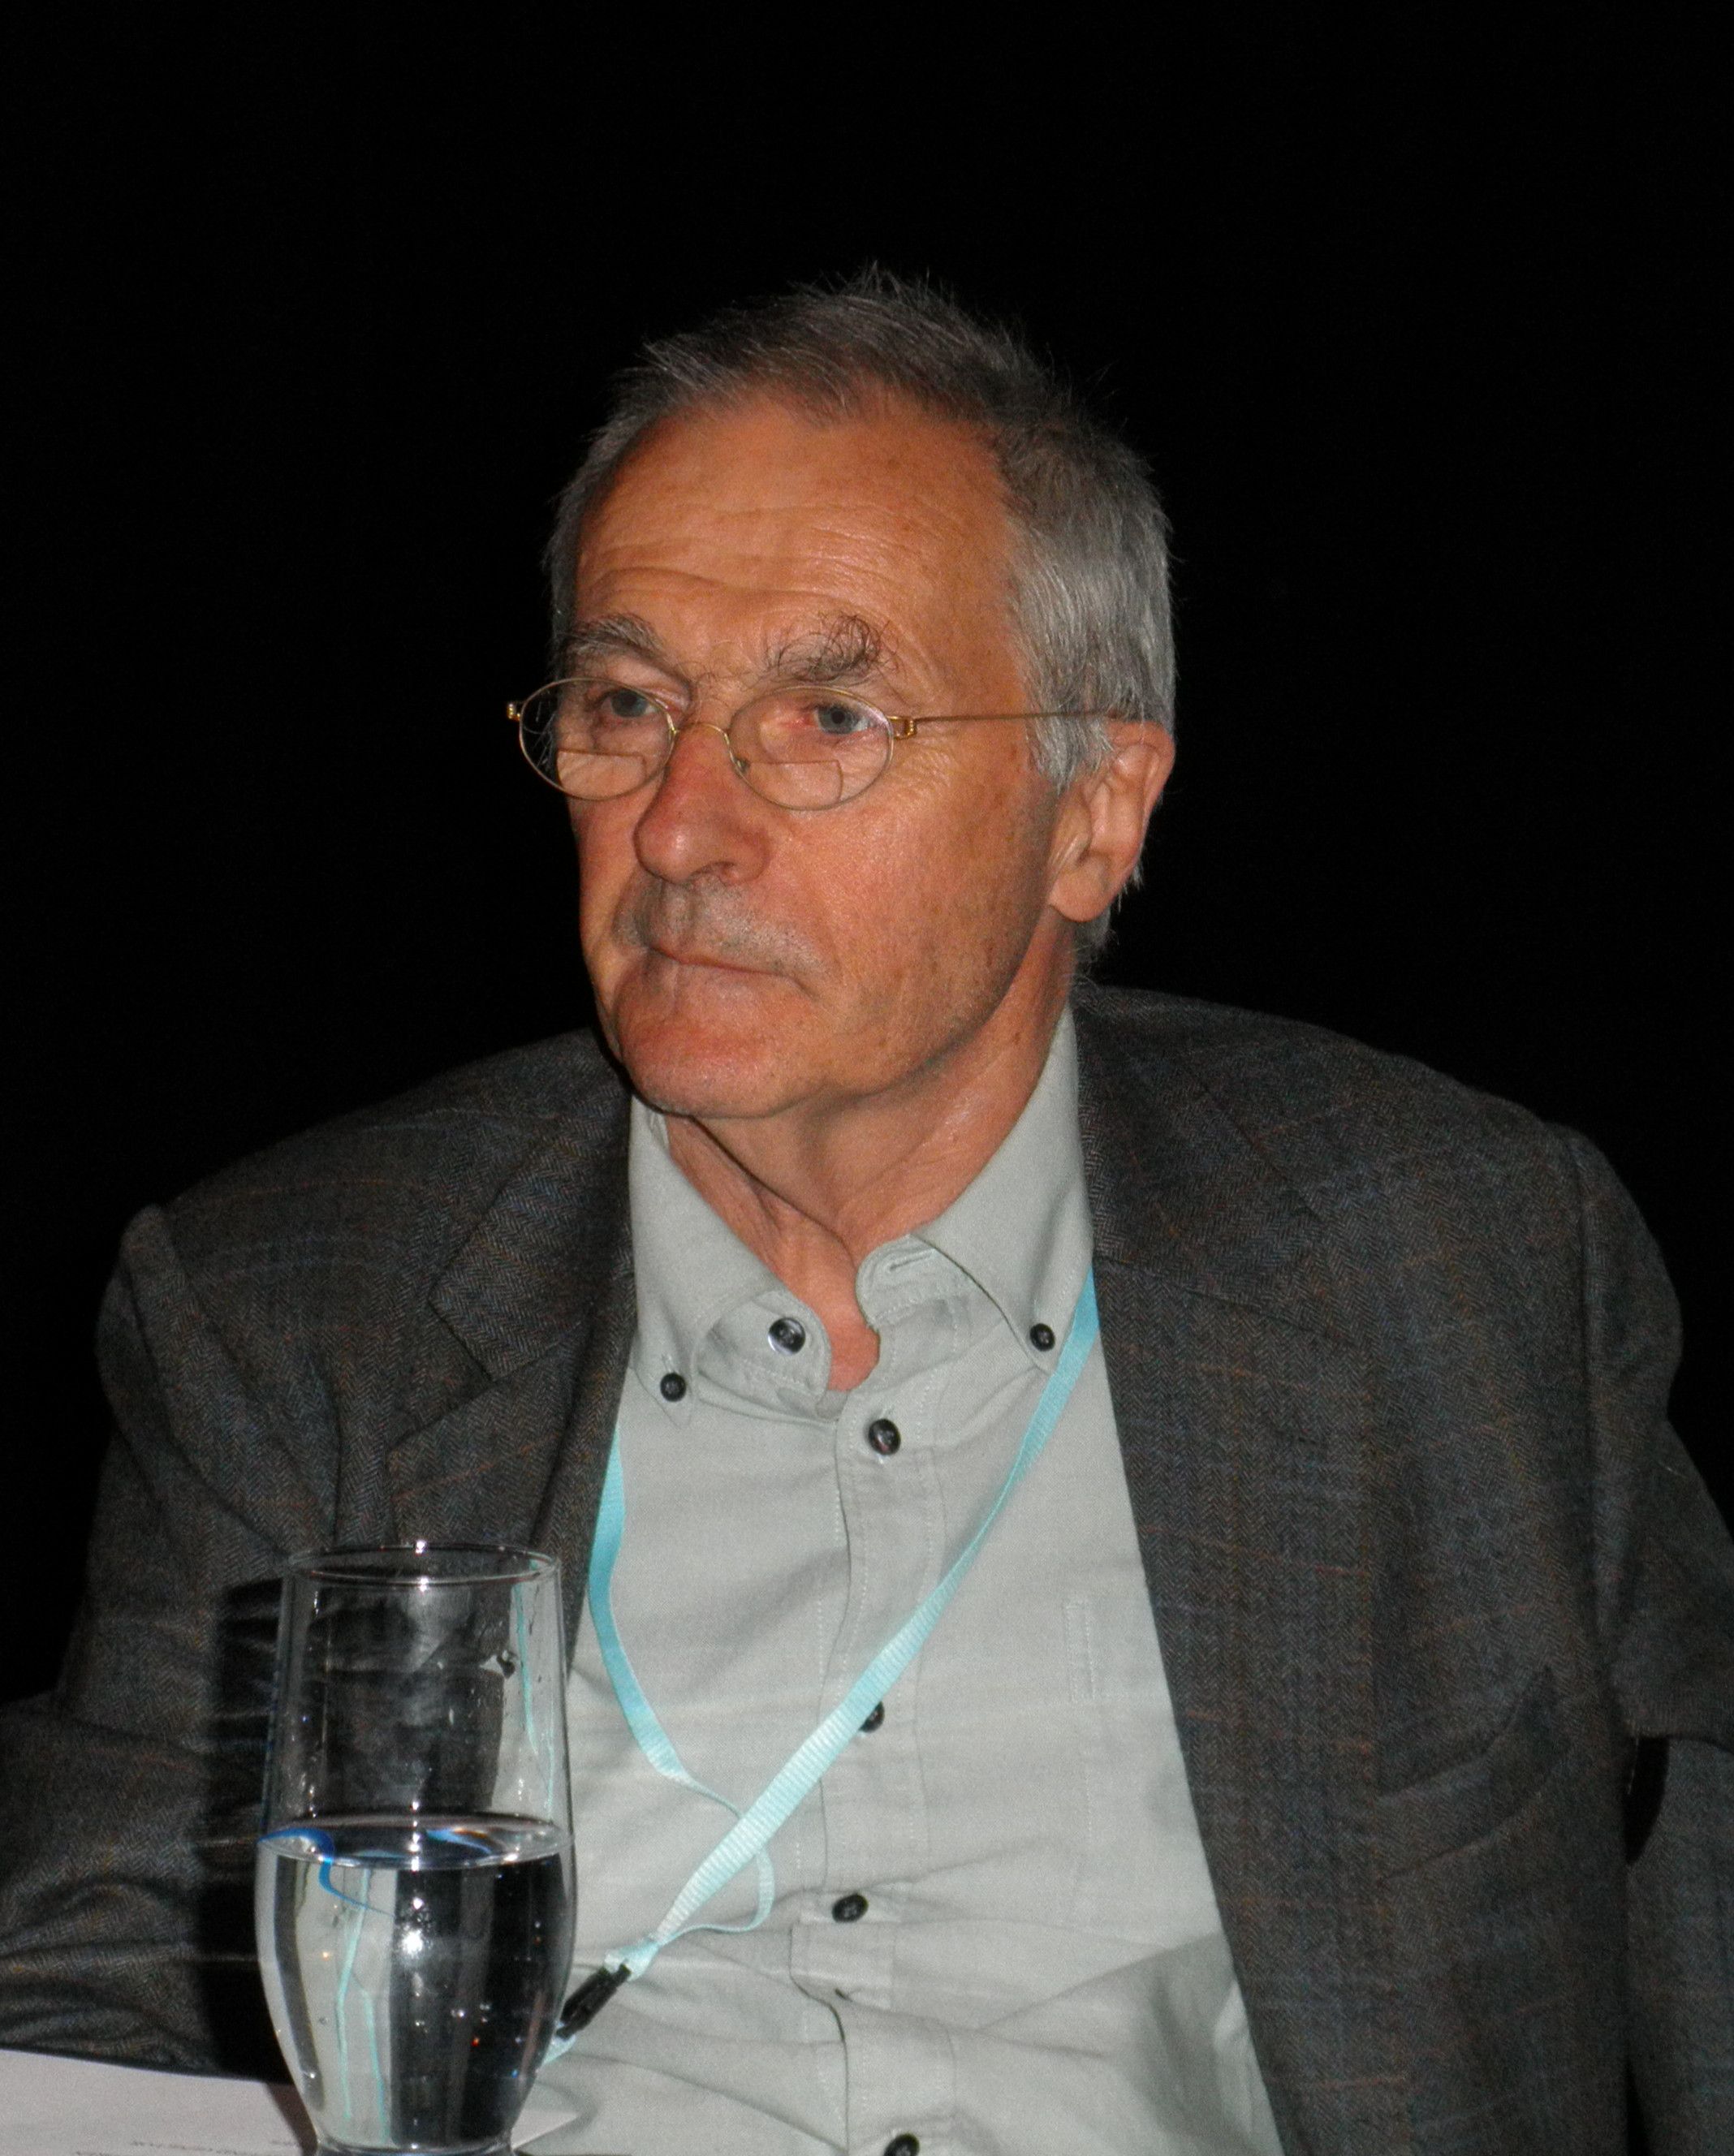 Steve Jones in 2012